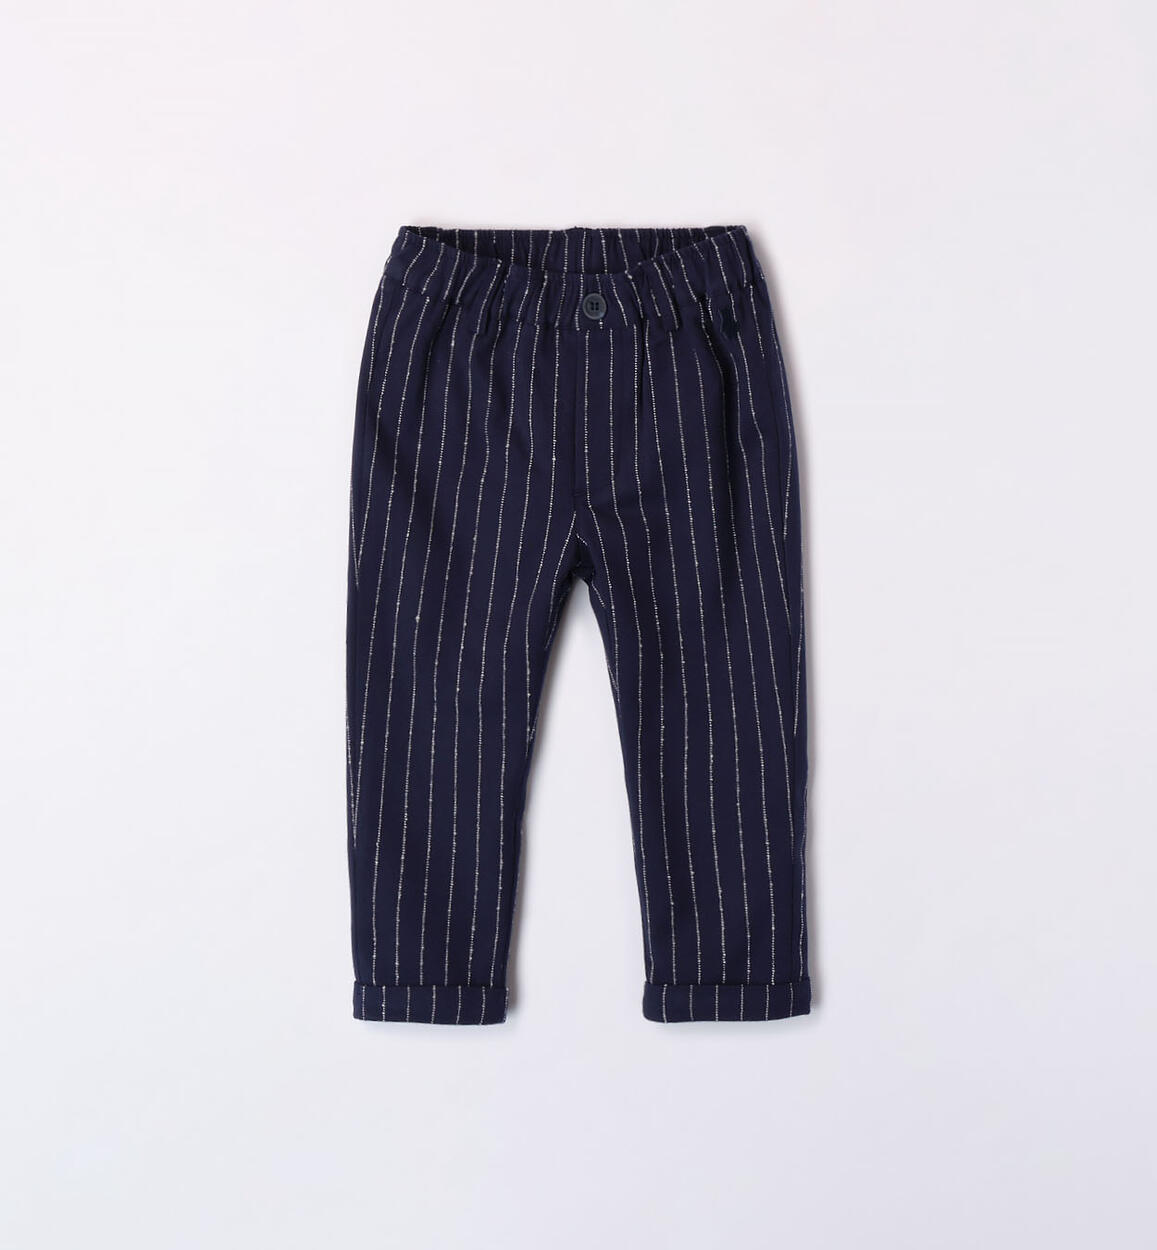 Pantalone elegante bimbo BLU Minibanda